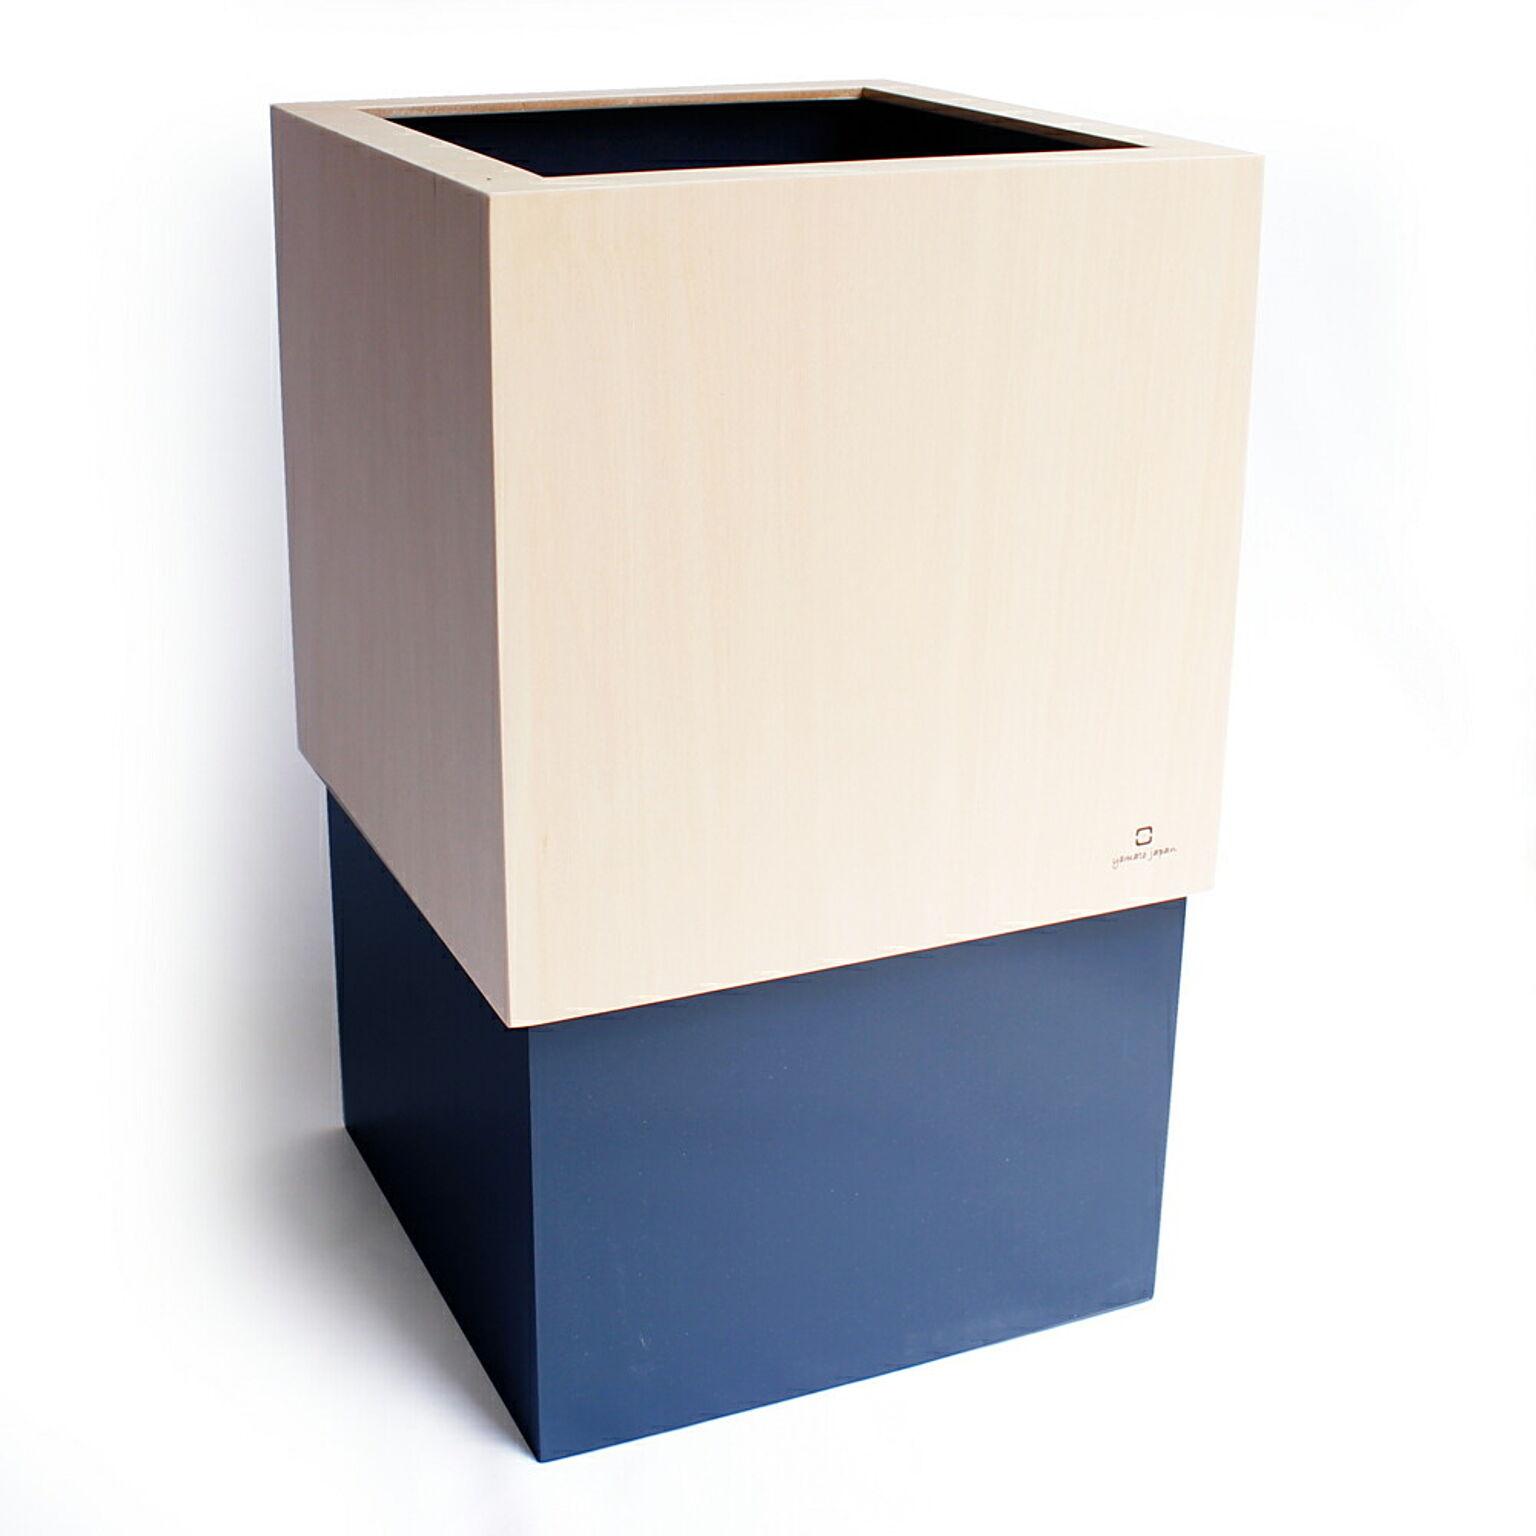 ヤマト工芸 W CUBE ゴミ箱 ダストボックス 日本製 10L 天然木 木製 隠せる ビニール袋 ゴミ袋 リビング 寝室